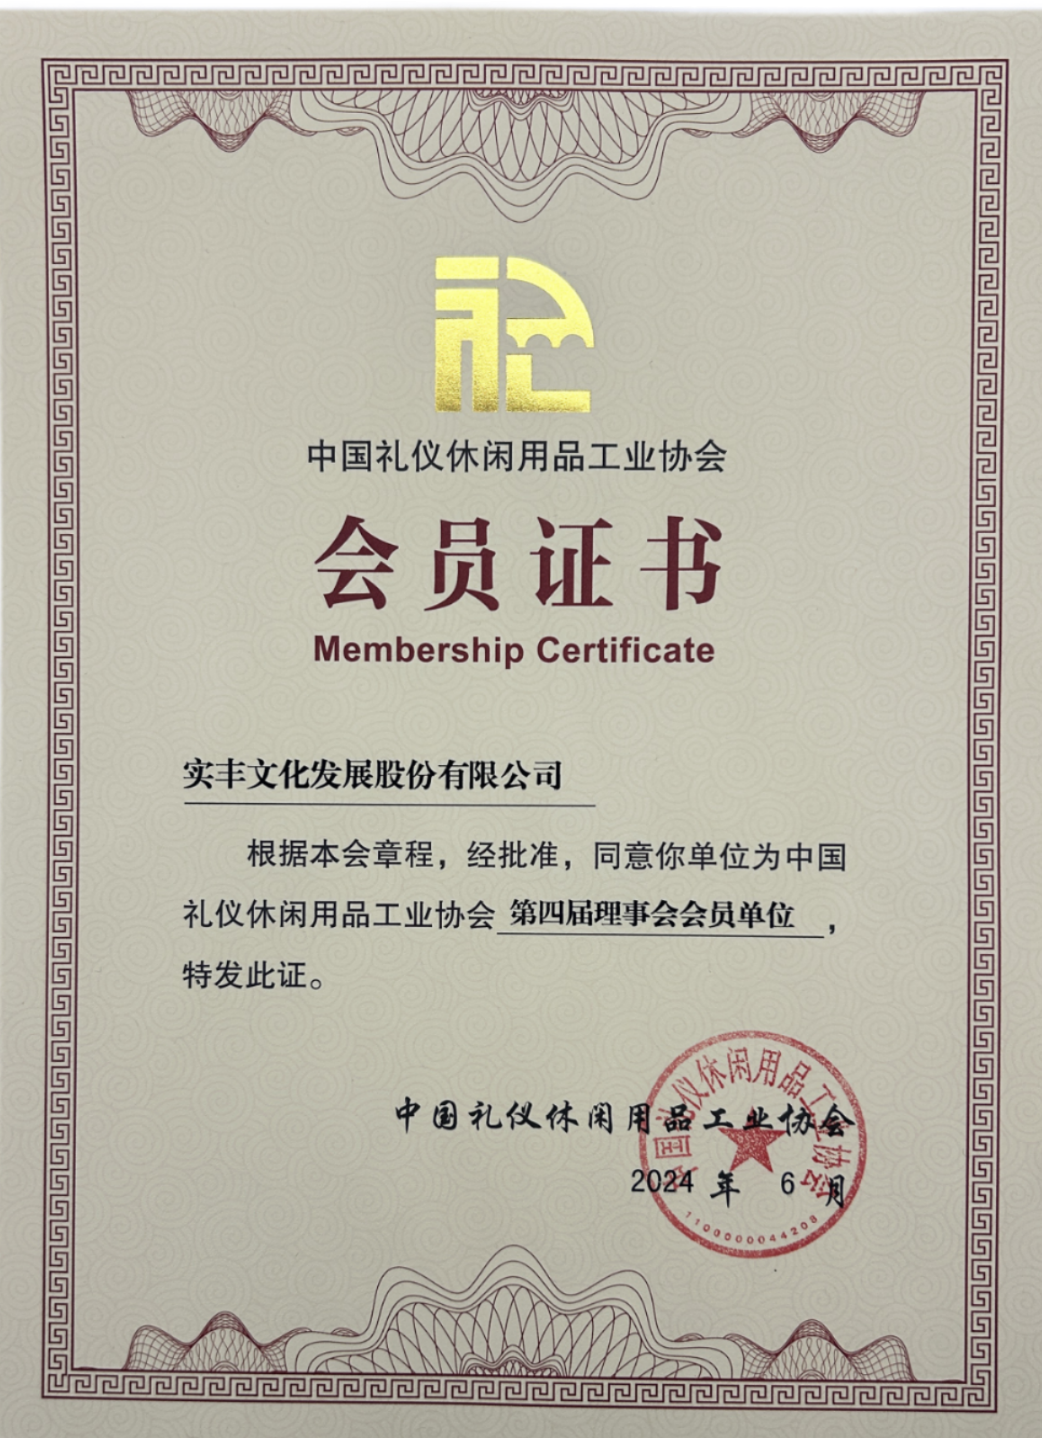 中国礼仪休闲用品工业协会会员证书